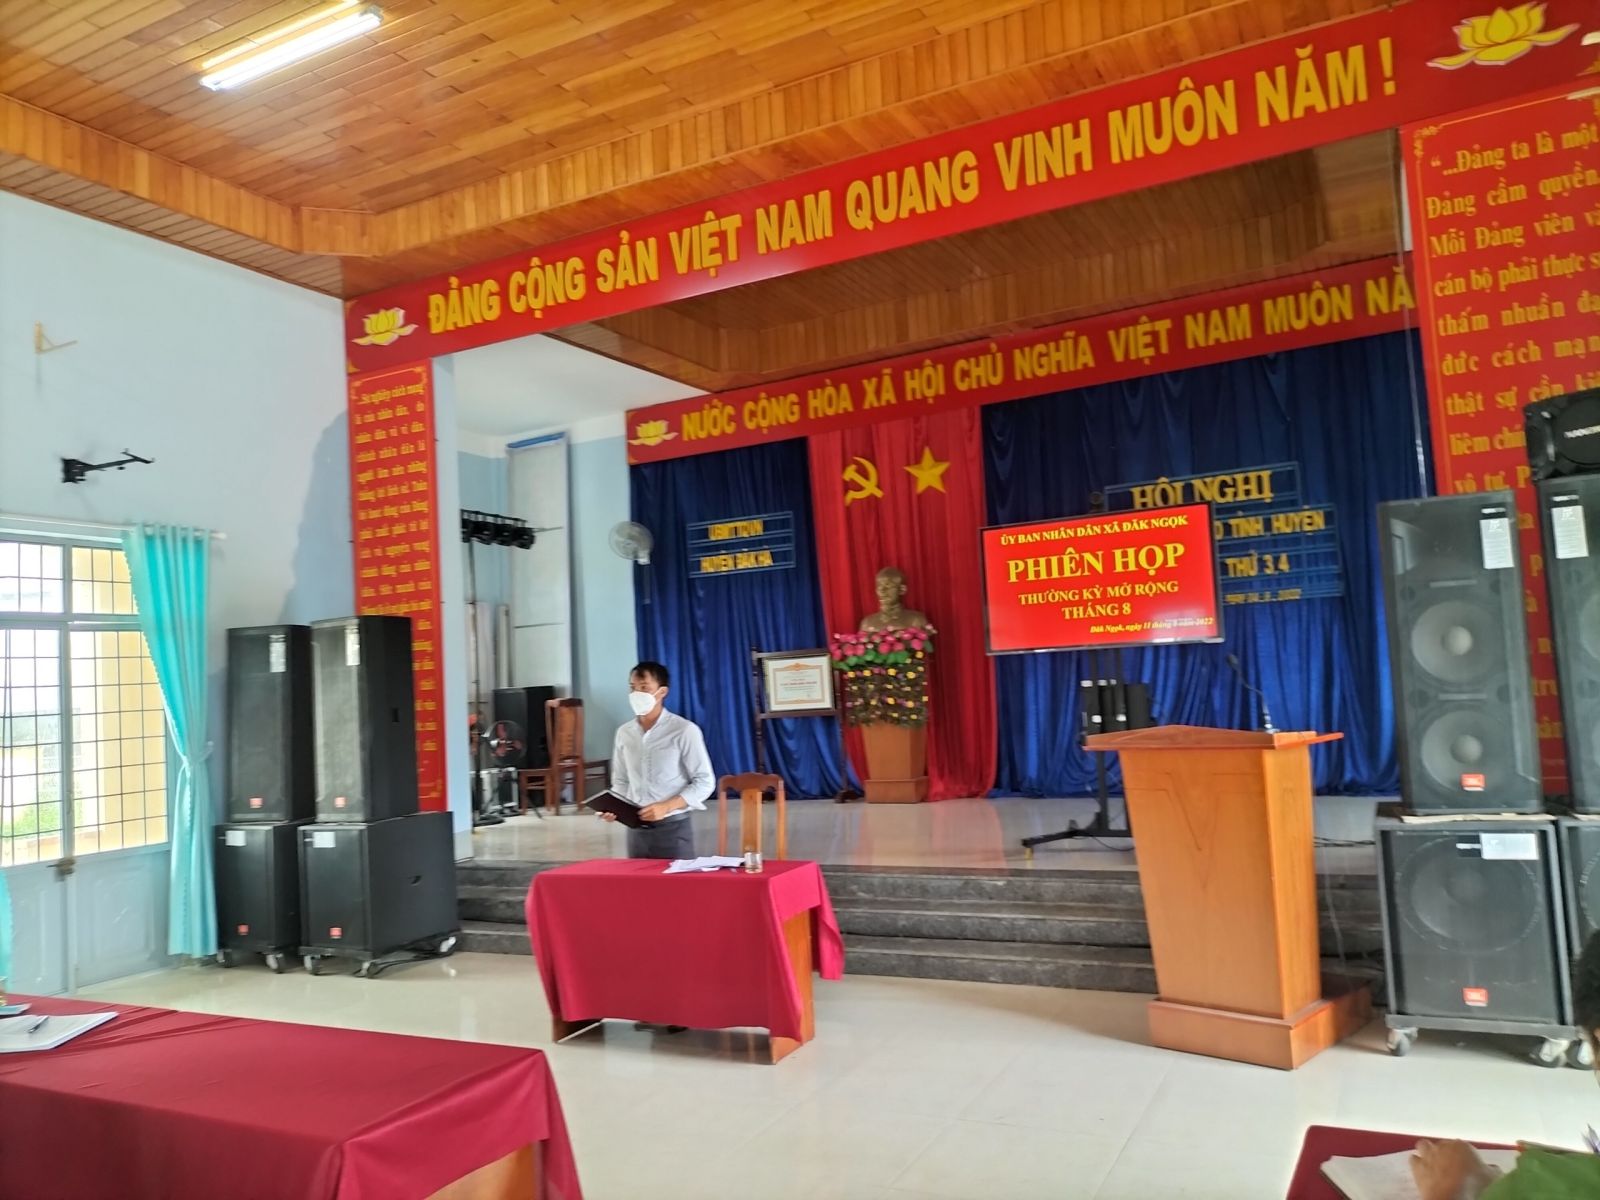 Đồng chí Phạm Văn Dũng - Phó chủ tịch UBND xã thông qua dự thảo báo cáo trình tại Hội nghị